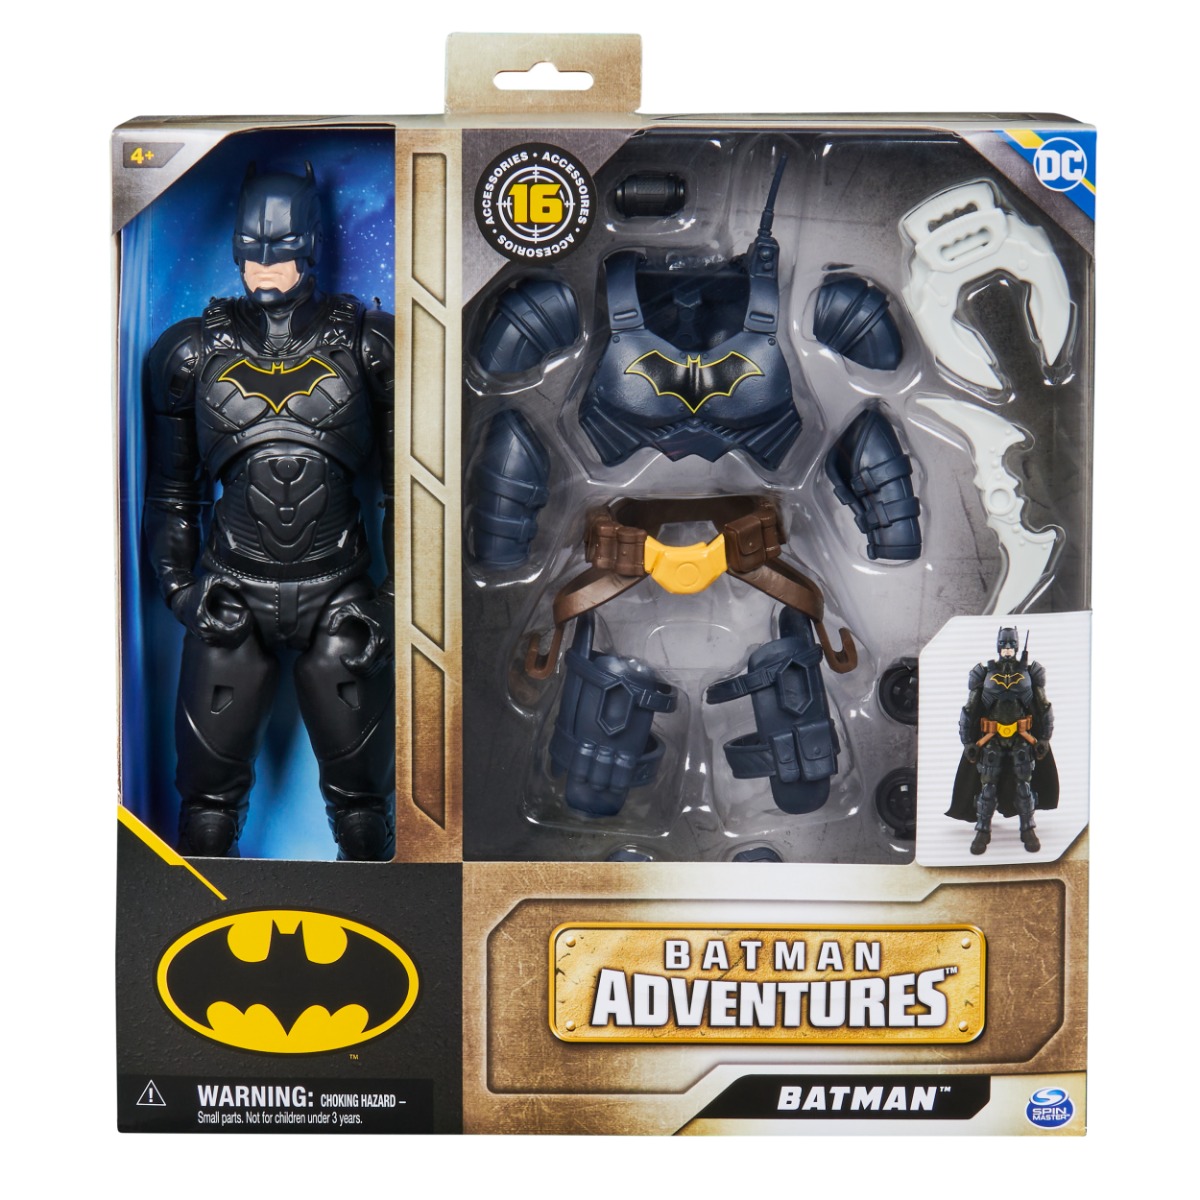 Figurina articulata cu 16 accesorii, Batman, 30 cm, 20142721